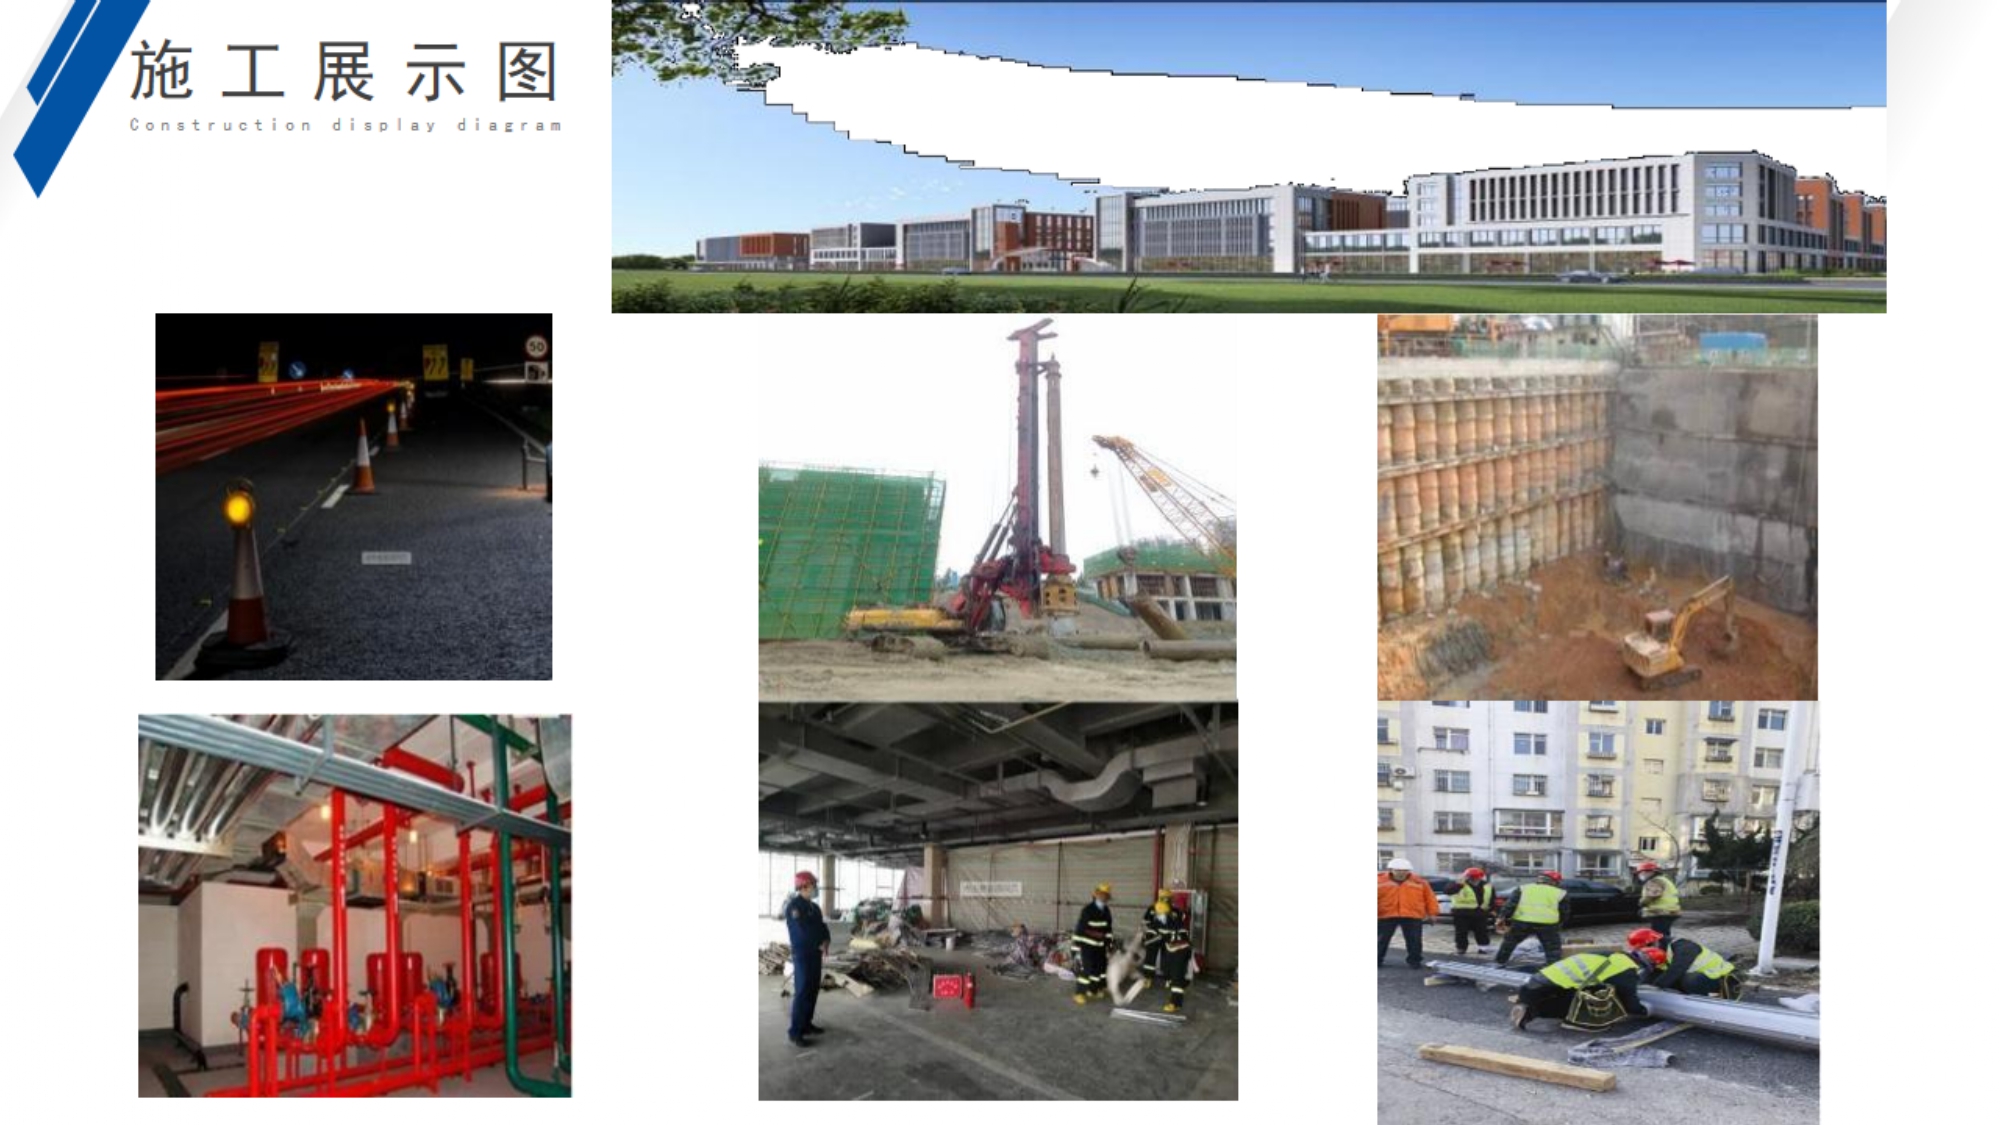 贵州科森建设工程有限公司 预审资料_page-0027.jpg